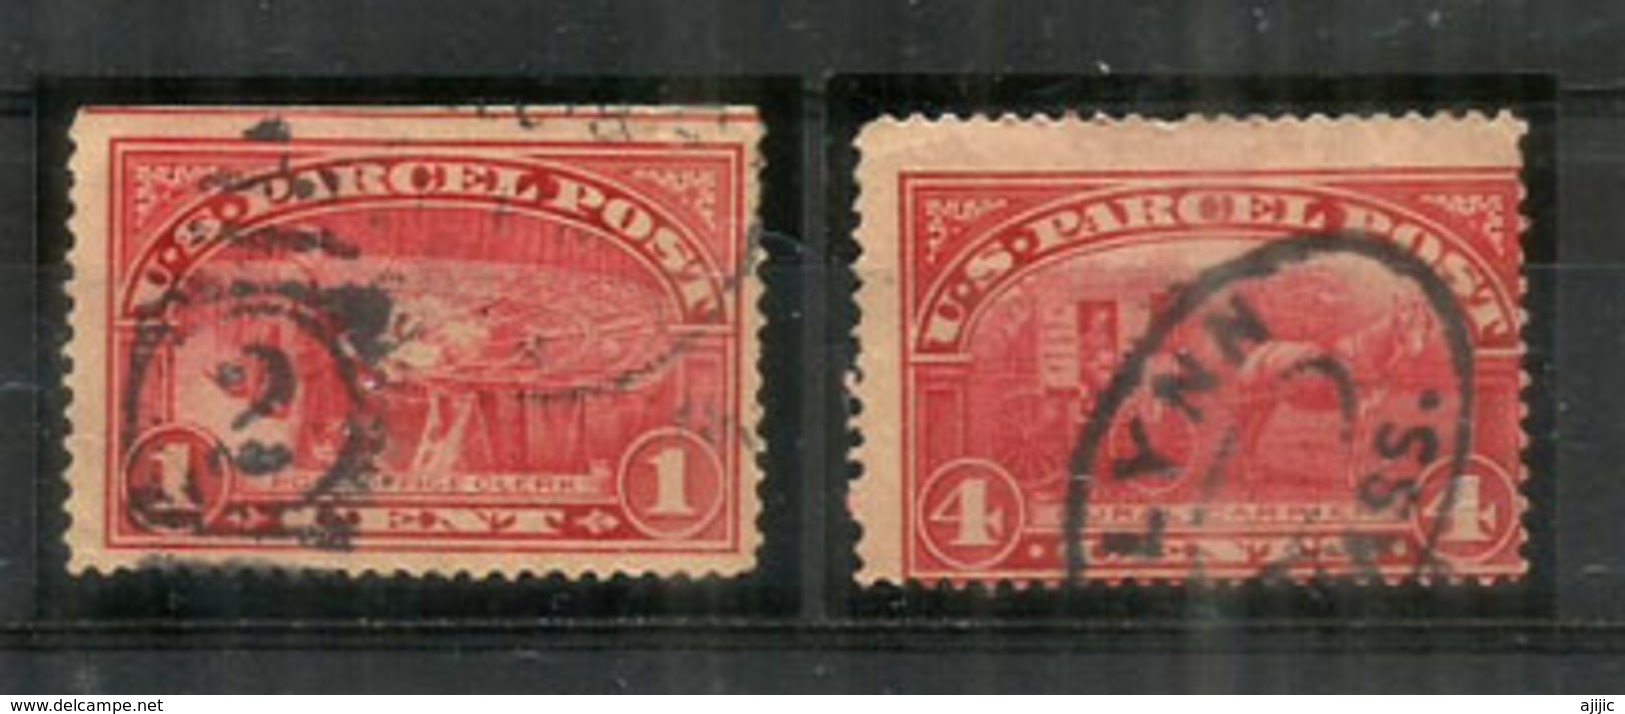 Year 1913. Parcel Post Stamps: Rural Carrier + Post Office Clerk. Scott # Q1-Q4,   Oblitérés, Bonne Qualité - Pacchi